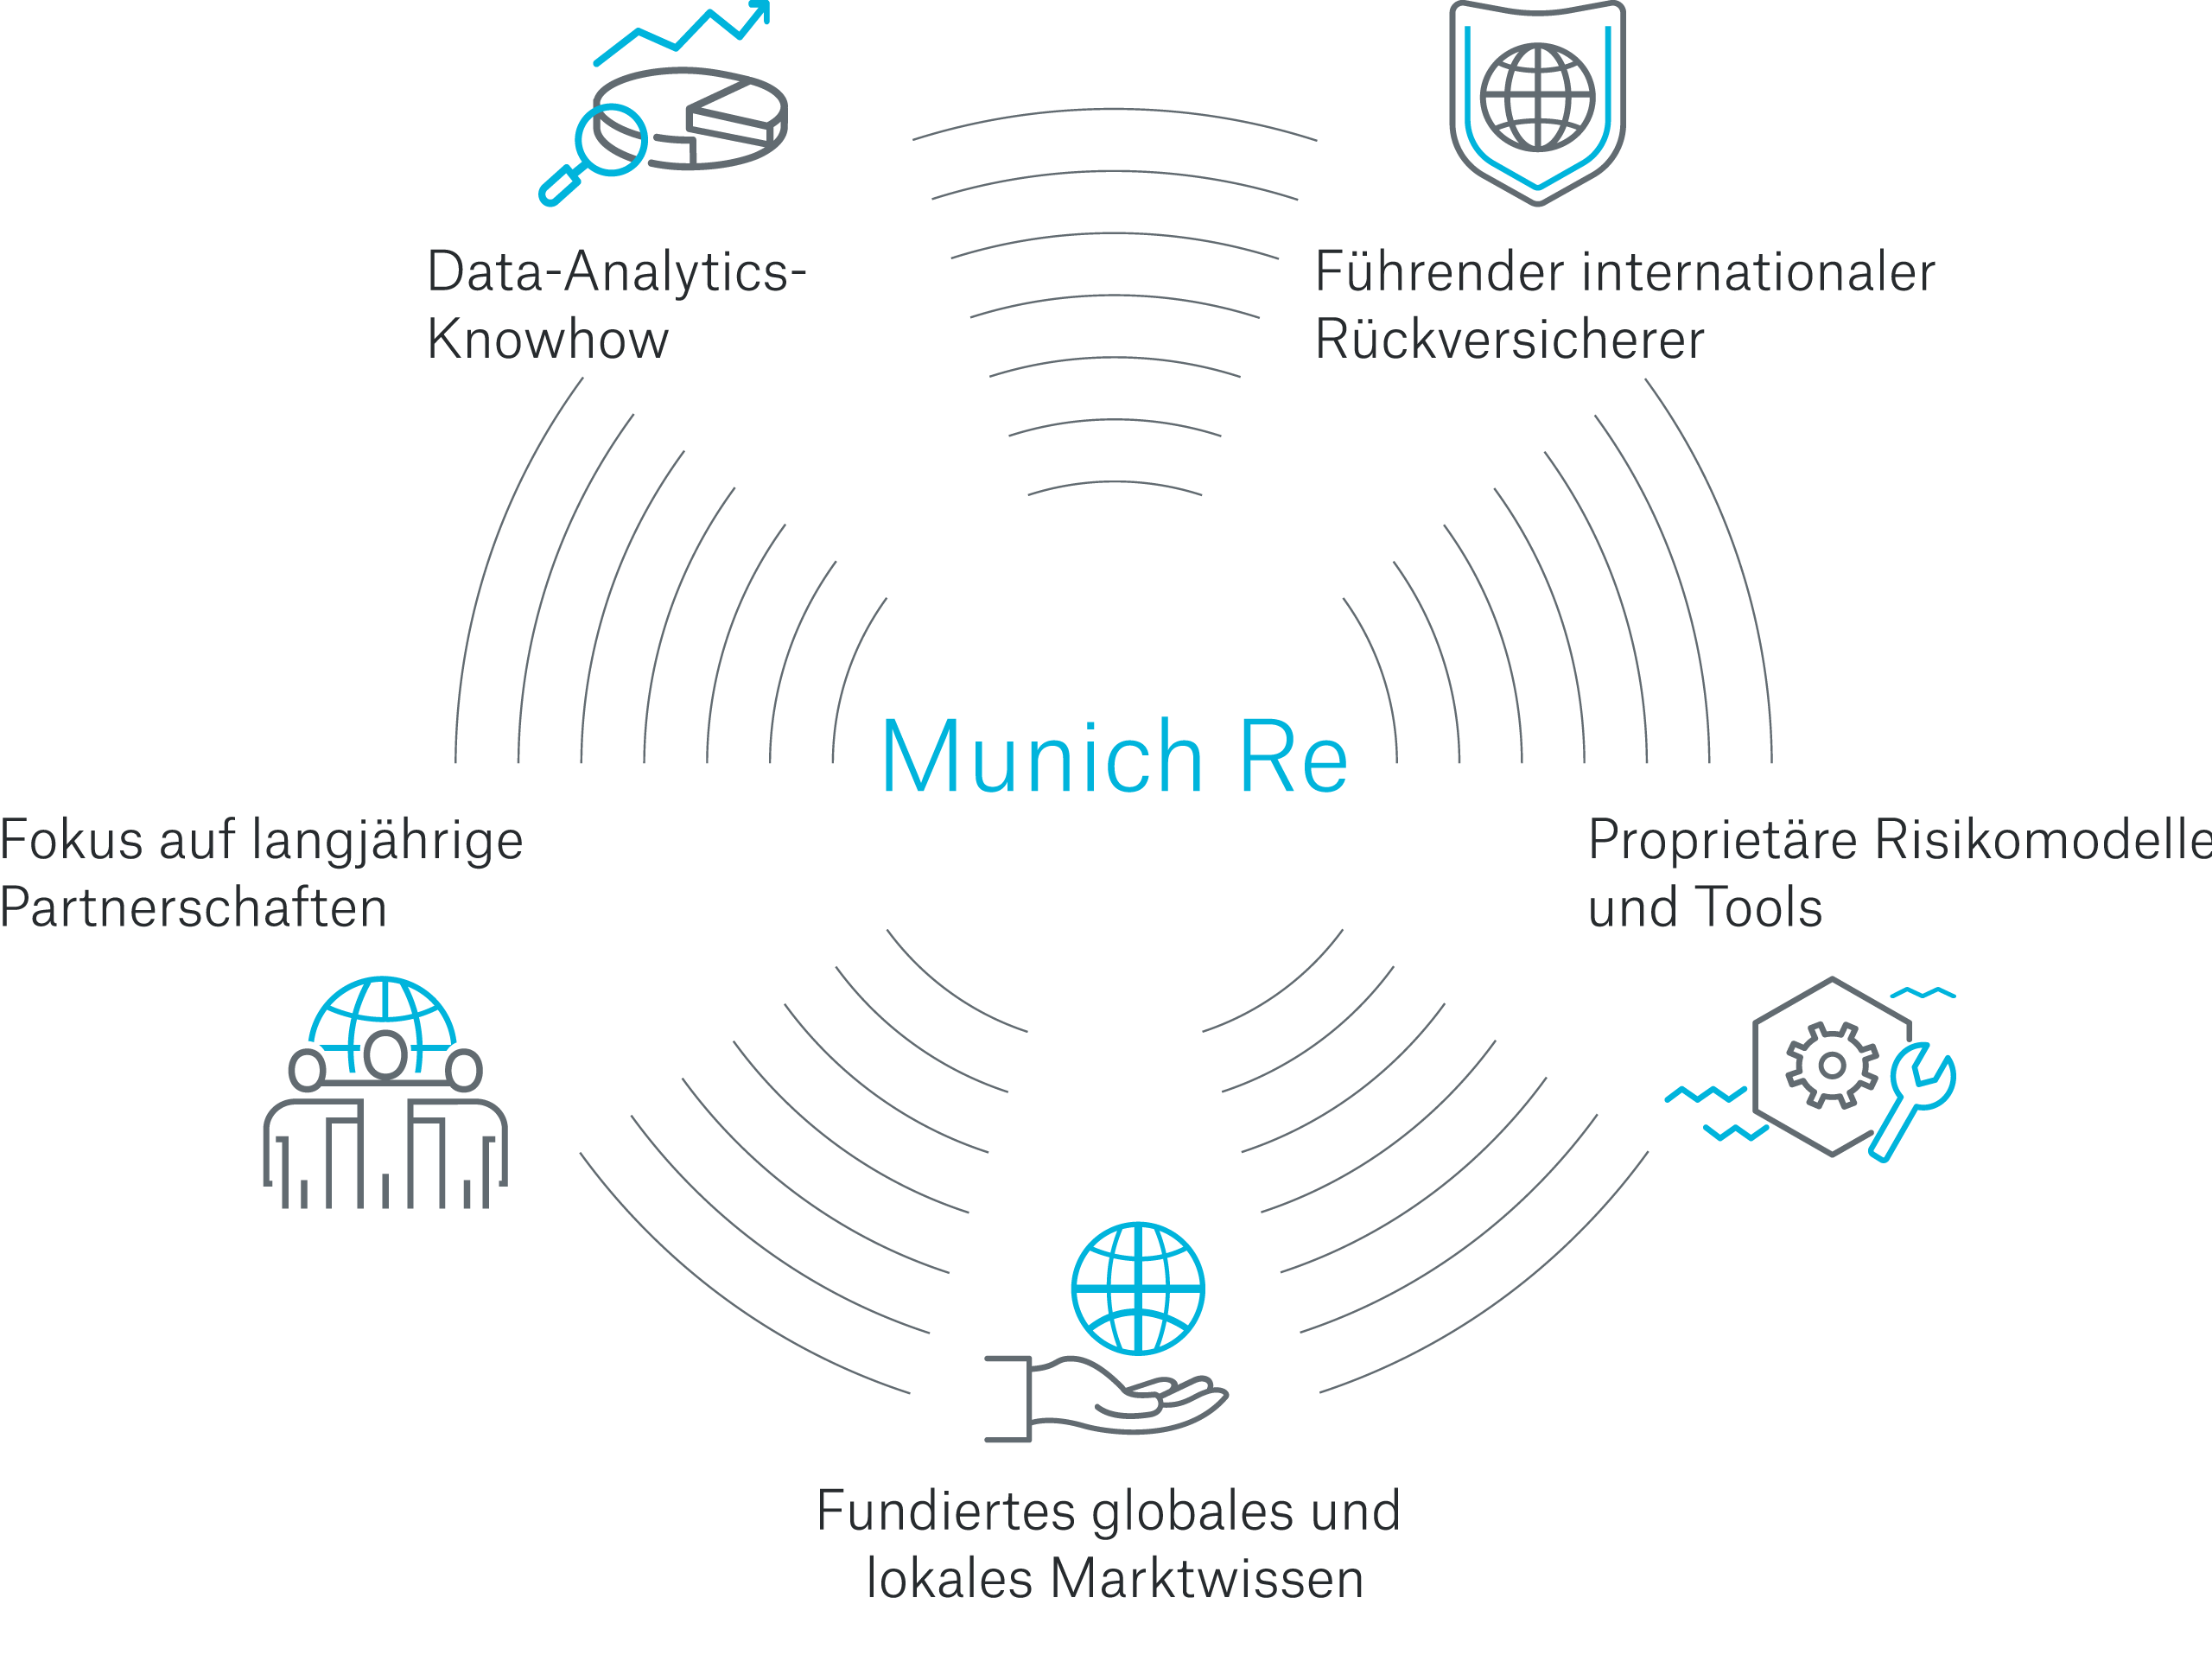 Profitieren Sie vom Data-Analytics-Wissen von Munich Re